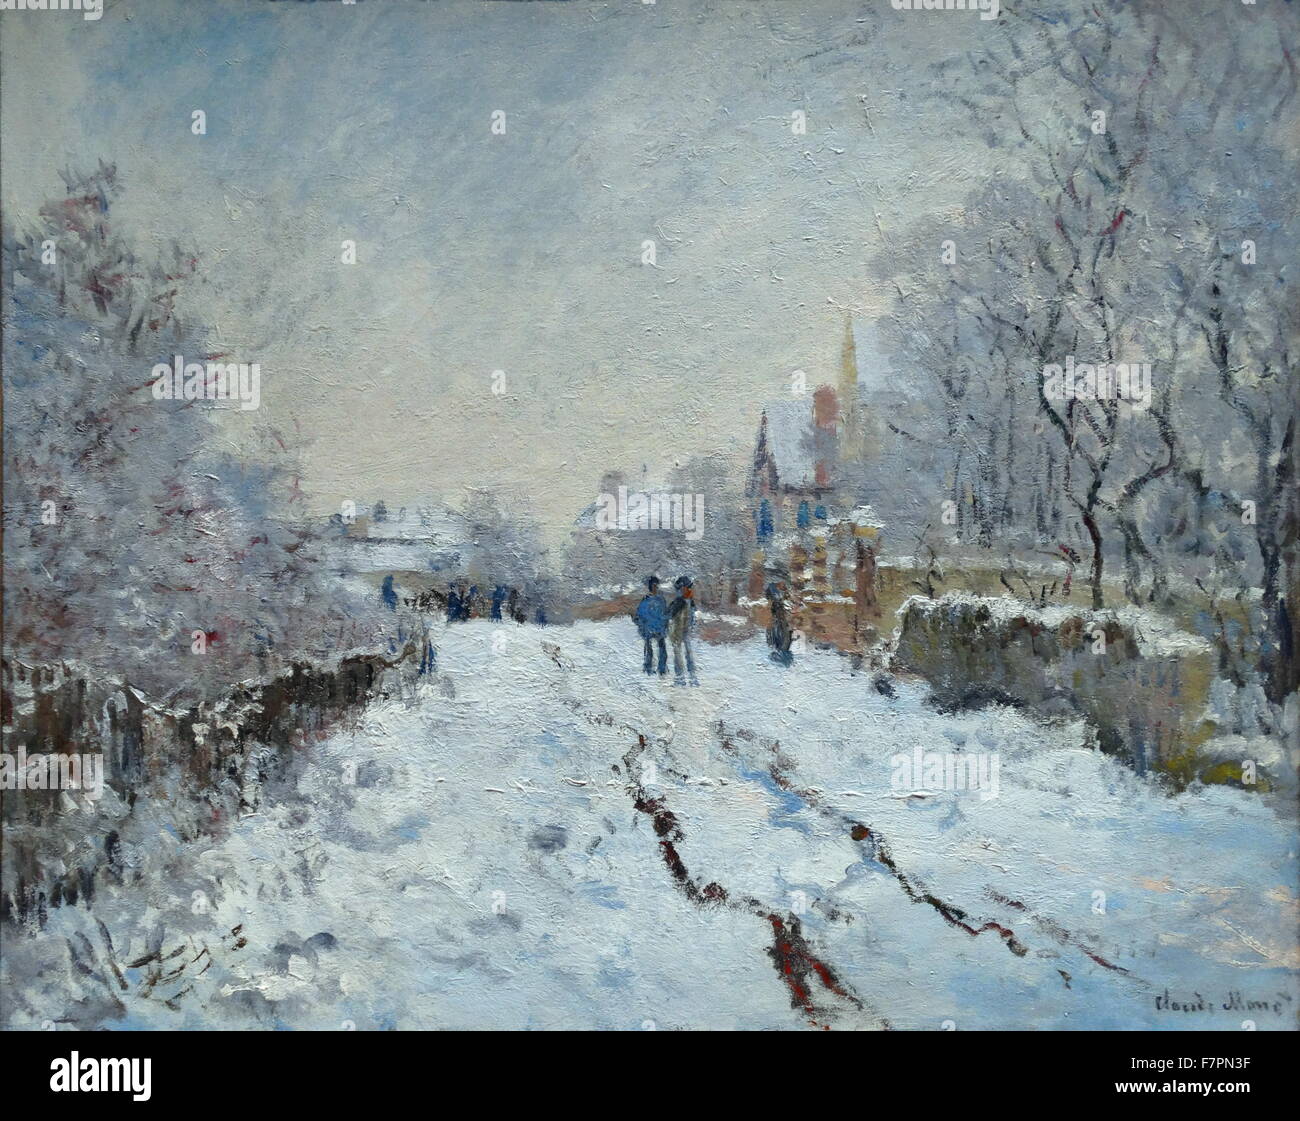 Gemälde mit dem Titel "Schnee-Szene bei Argenteuil" von Claude Monet (1840-1926) Gründer der französischen impressionistischen Malerei. Datiert 1875 Stockfoto